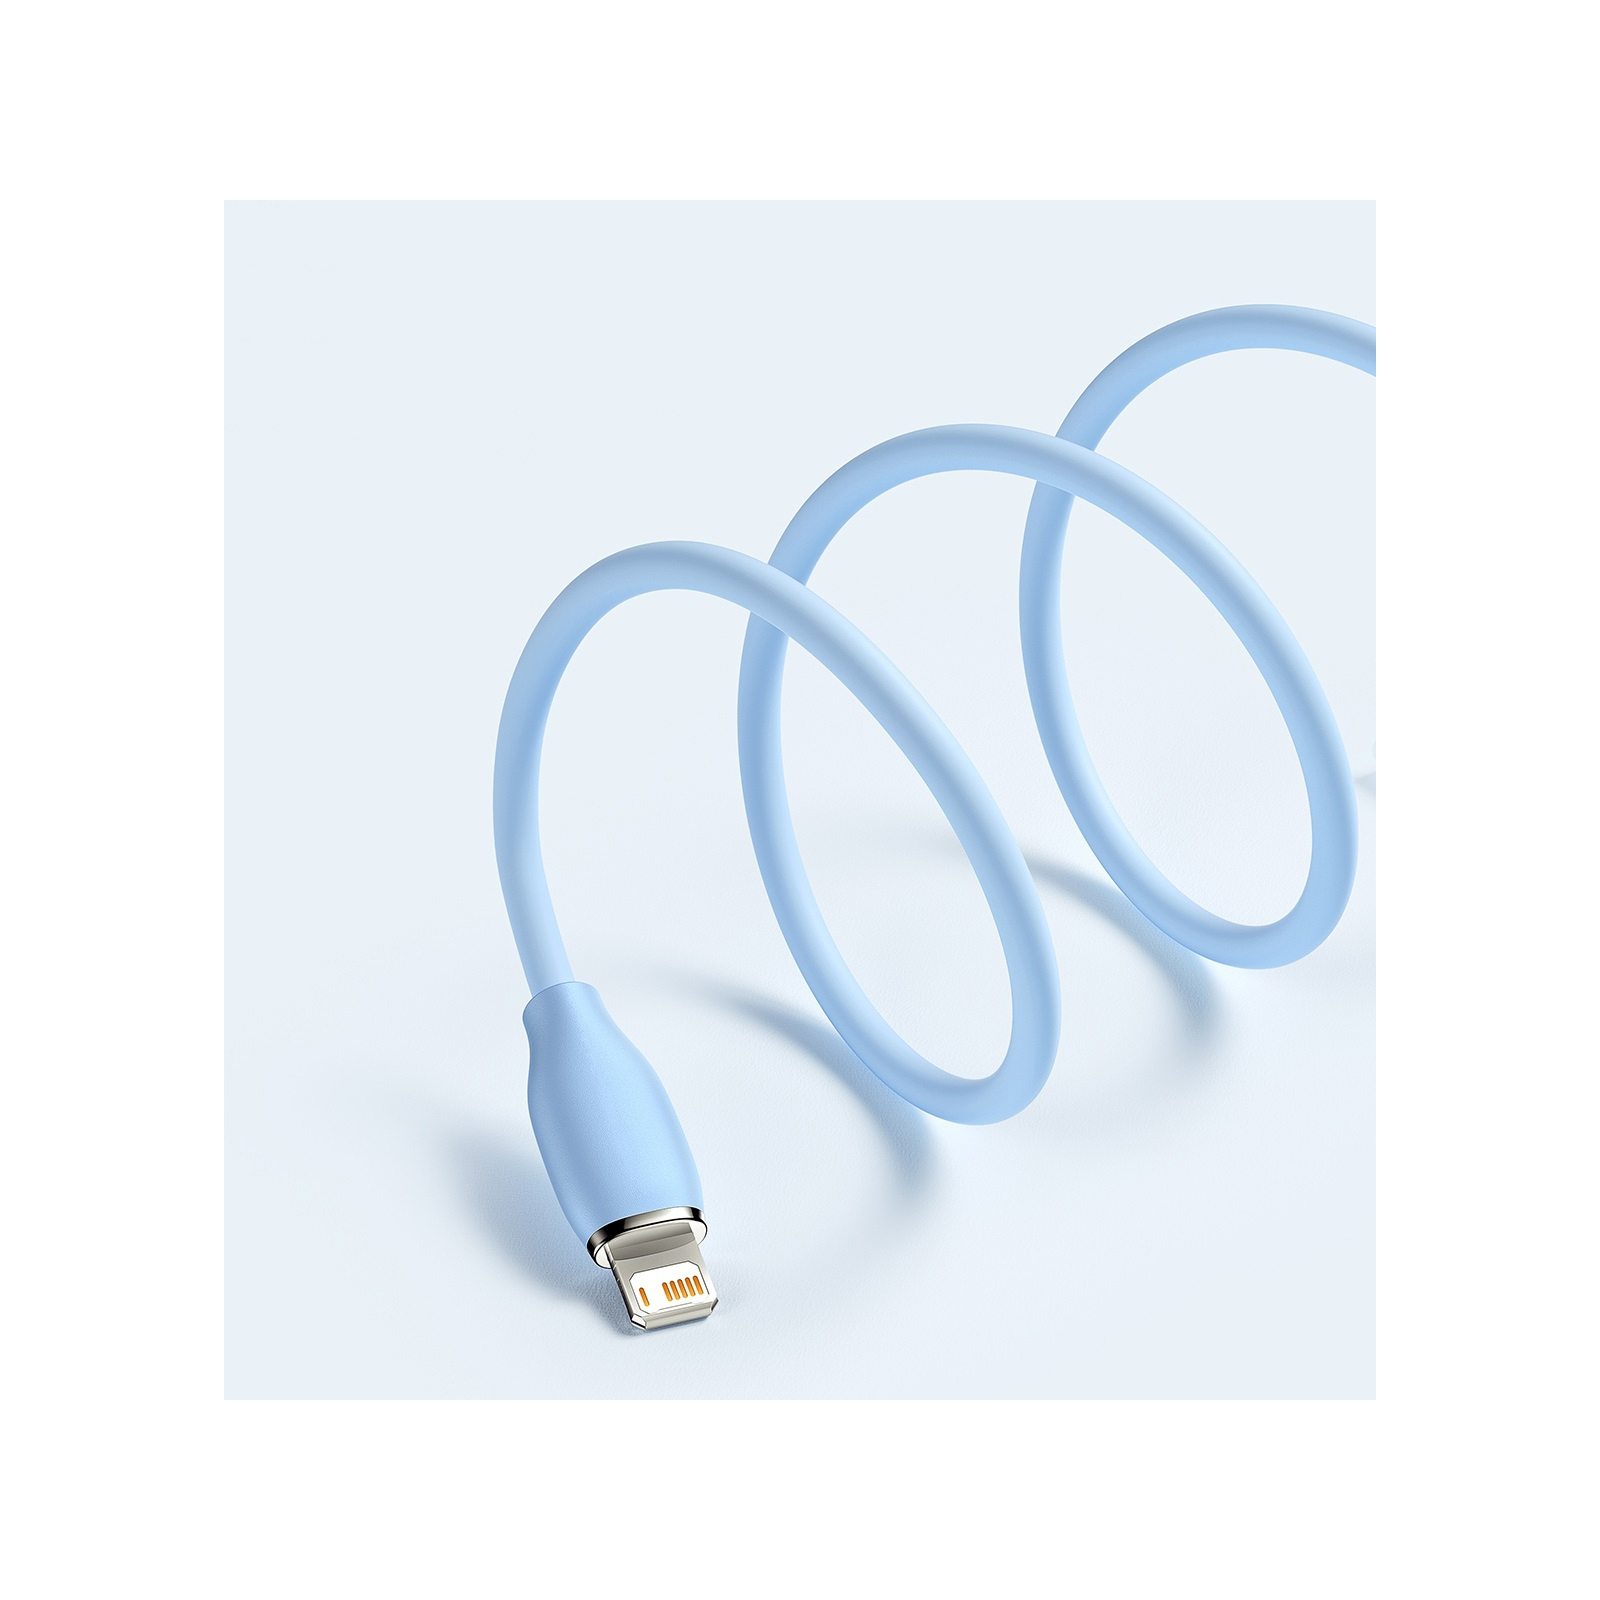 Дата кабель USB 2.0 AM to Lightning 1.2m 2.4A Jelly Liquid Silica Gel Blue Baseus (CAGD000003) изображение 5